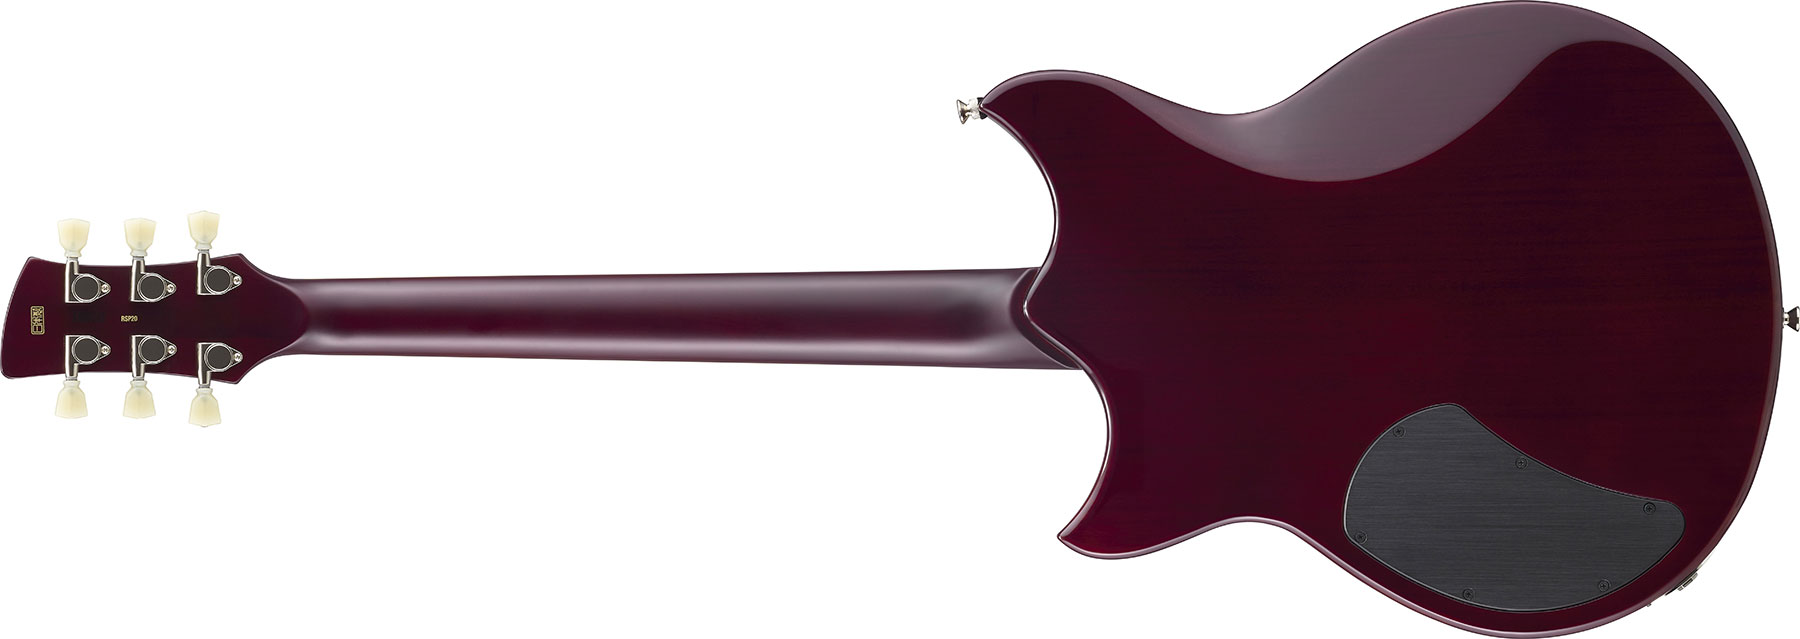 Yamaha Rss02t Revstar Standard 2p90 Ht Rw - Black - Guitare Électrique Double Cut - Variation 2